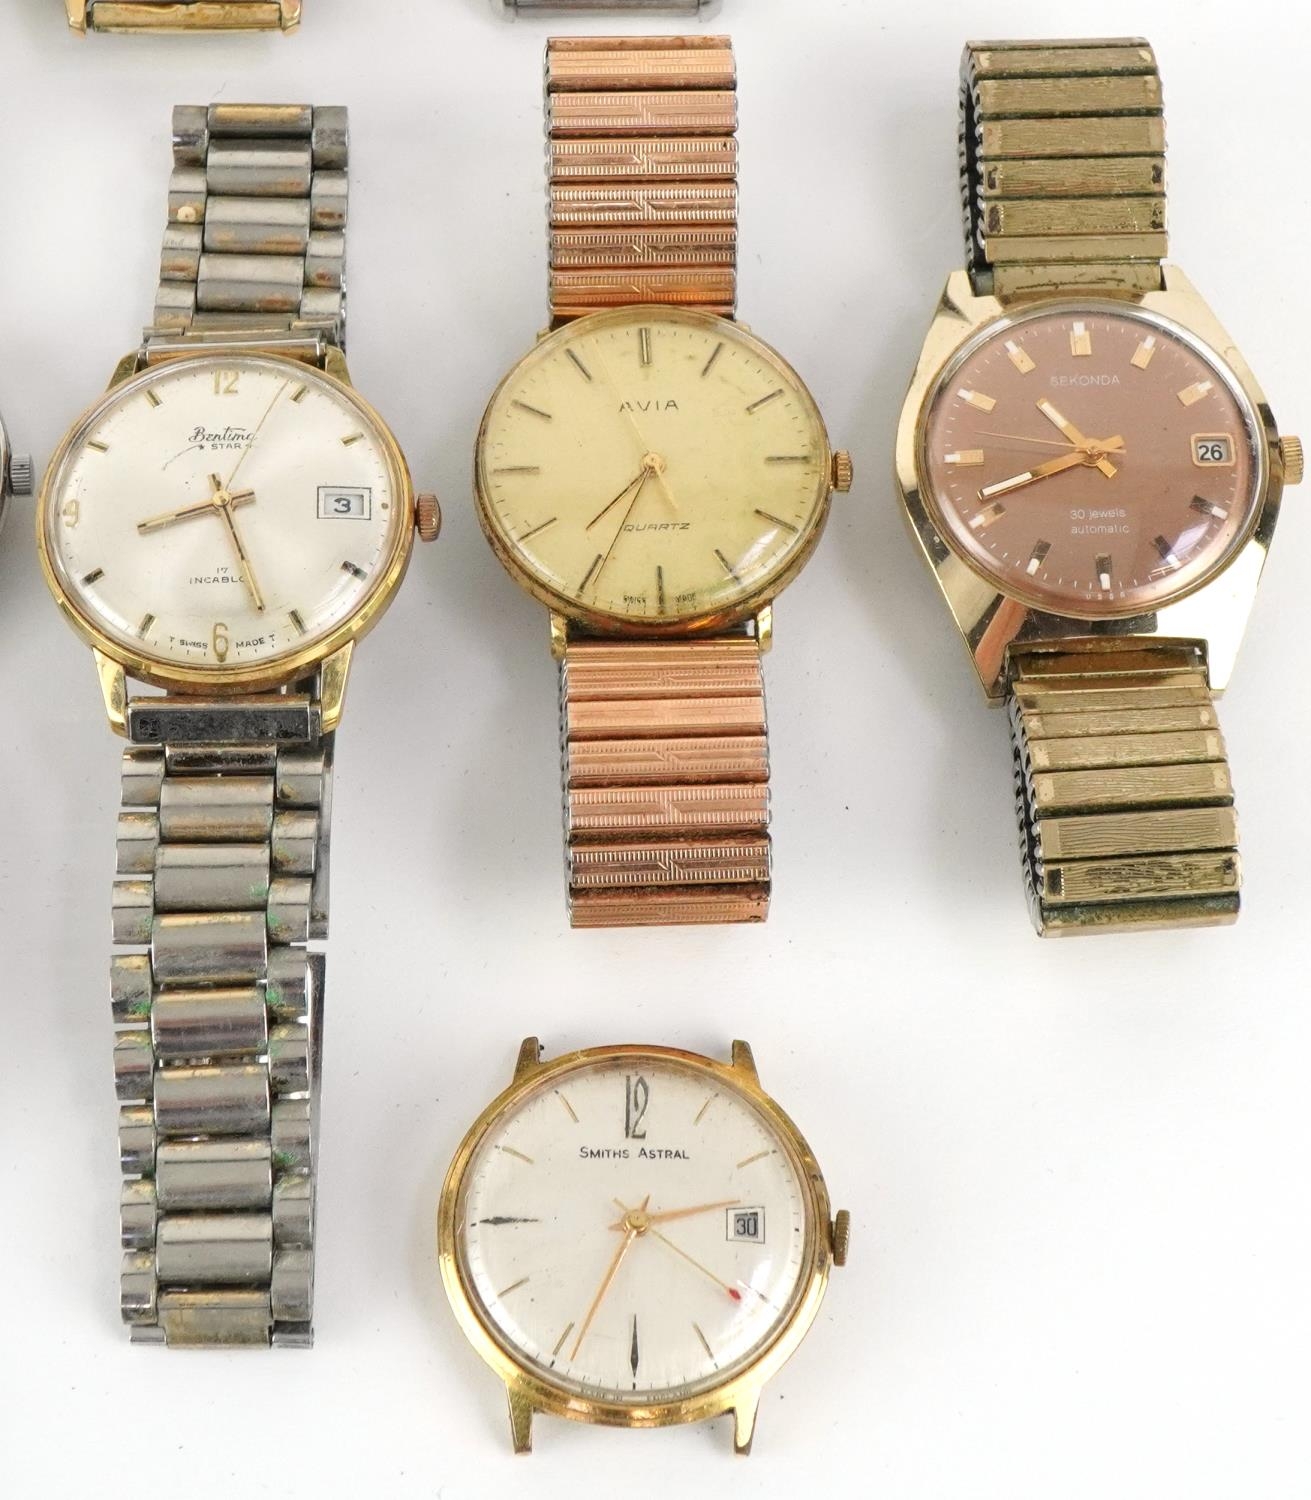 Fourteen vintage gentlemen's wristwatches including Junghans, Levis, Sekonda, Cyma, Avia, Bentima, - Image 4 of 4